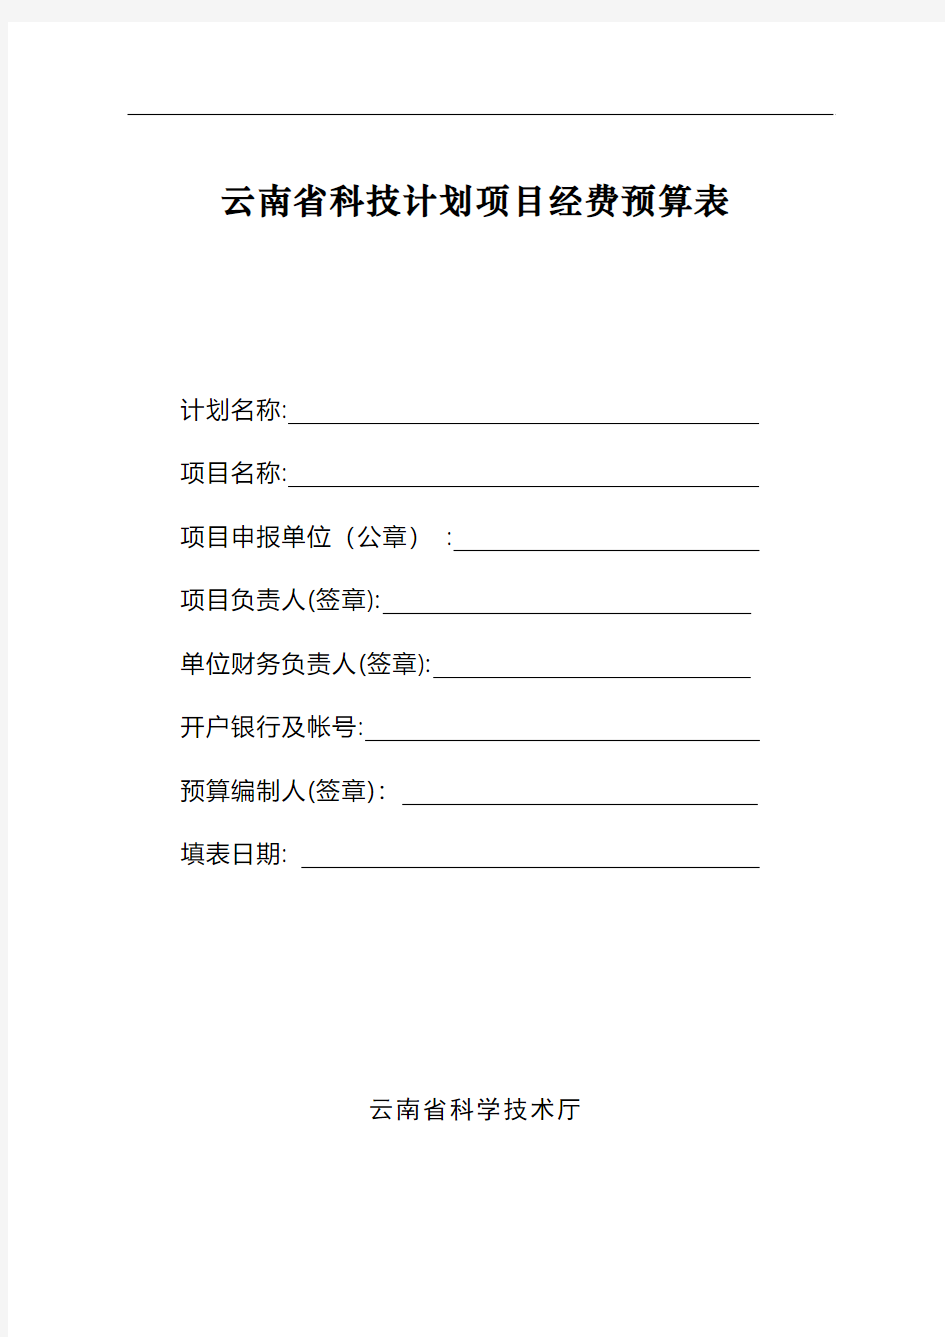 云南省科技计划项目经费预算表